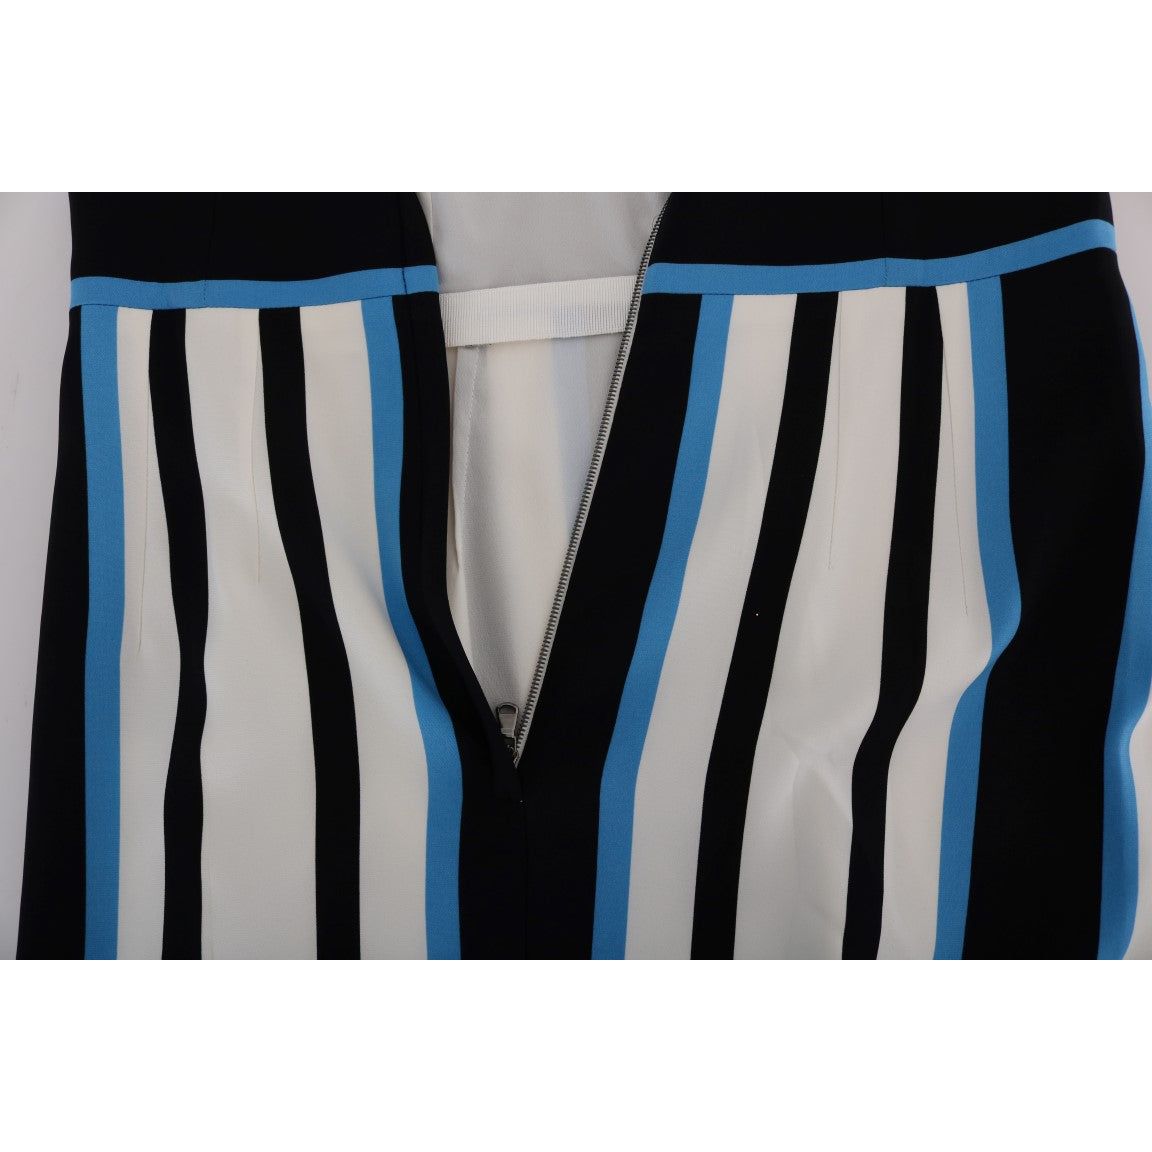 Dolce & GabbanaChic Striped Silk Sheath DressMcRichard Designer Brands£579.00